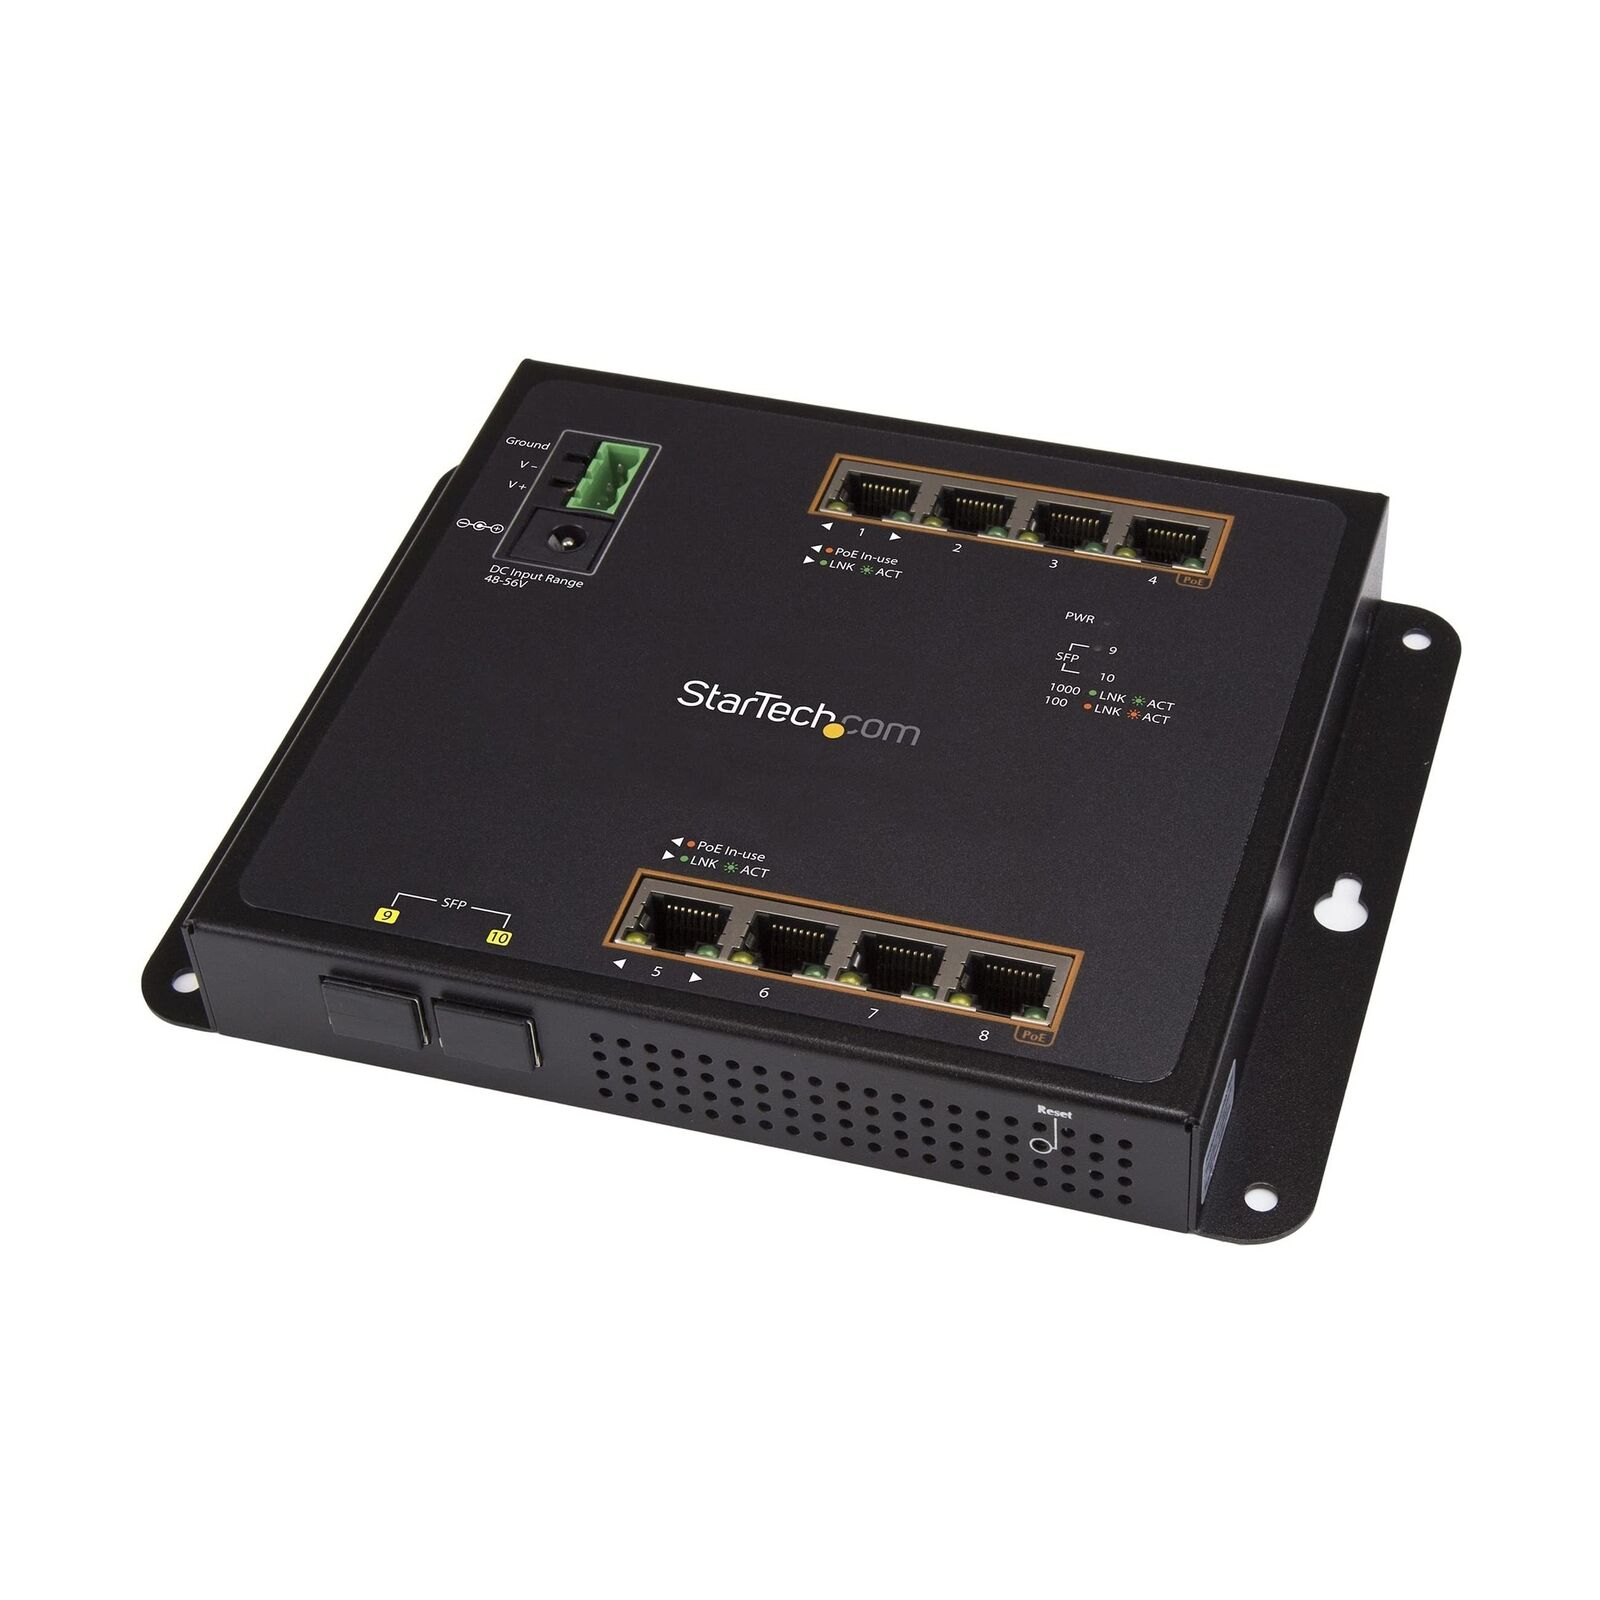 StarTech.com Industrial 8 Port Gigabit PoE+ Switch w/2 SFP MSA Slots - 30W - ...